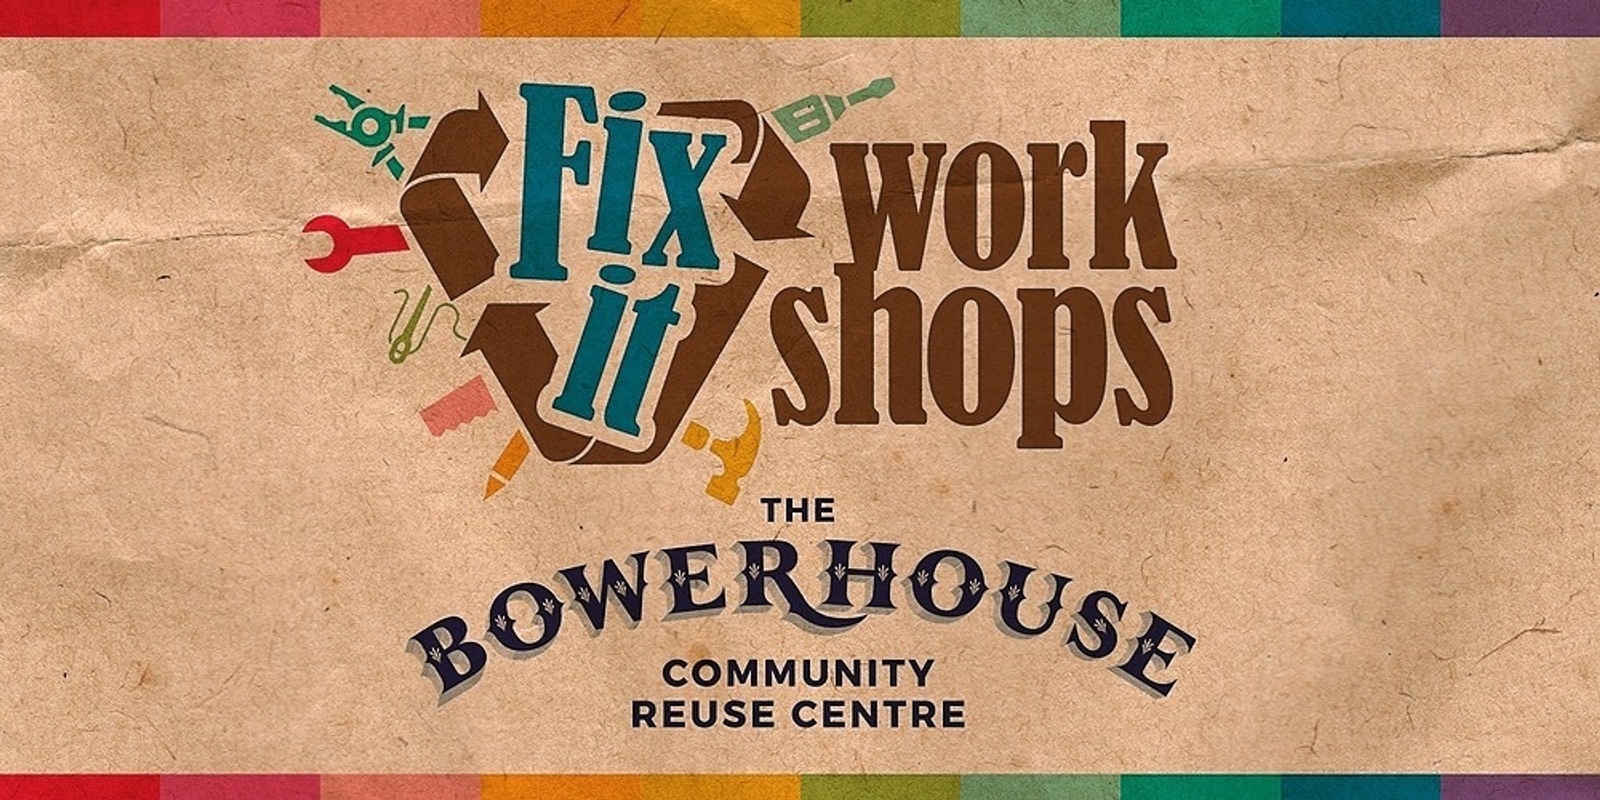 Bike Repairs & Maintenance Fix It Workshop - The Bowerhouse Community Reuse Centre